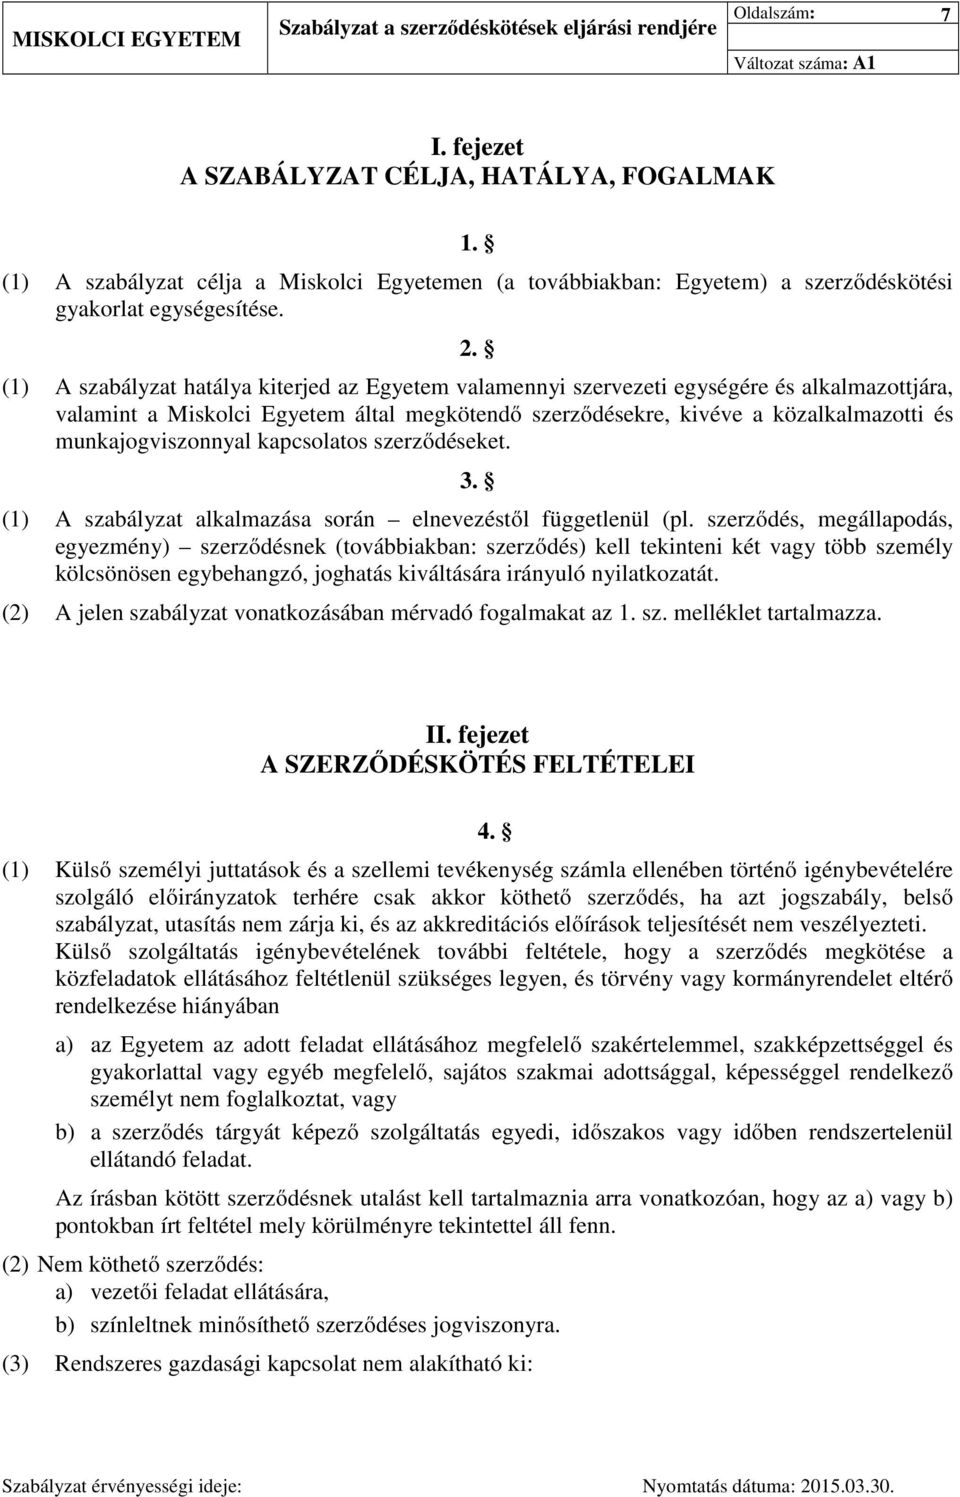 munkajogviszonnyal kapcsolatos szerződéseket. 3. (1) A szabályzat alkalmazása során elnevezéstől függetlenül (pl.